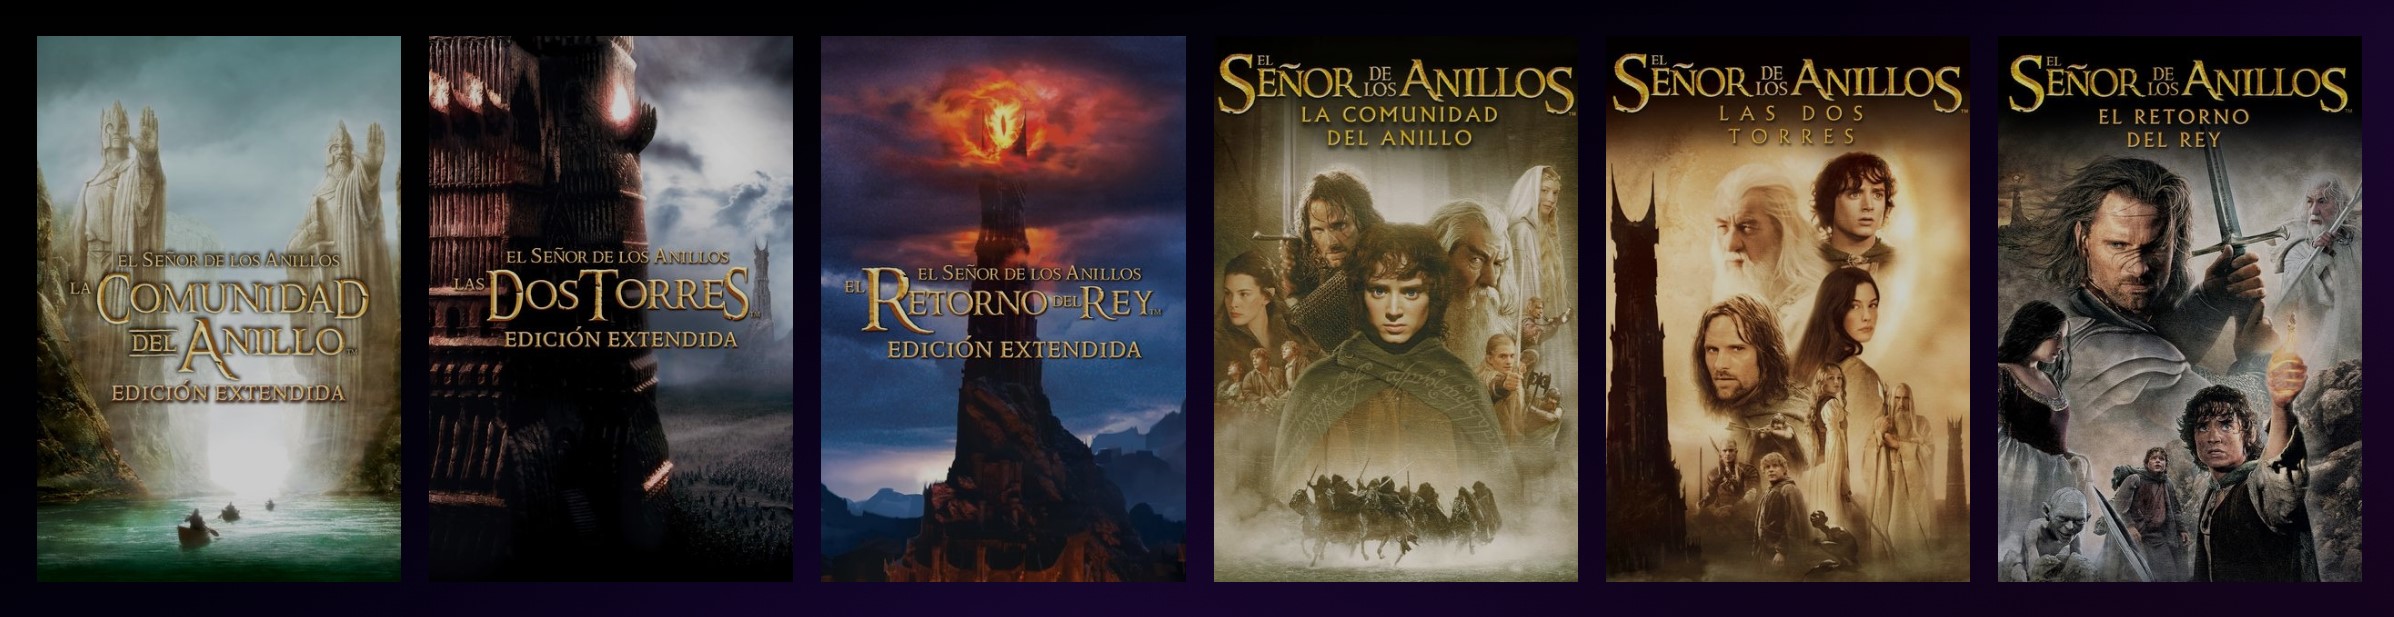 El Hobbit Orden El señor de los anillos: ¿cómo ver en orden cronológico la saga antes de la  serie? | Streaming | La República